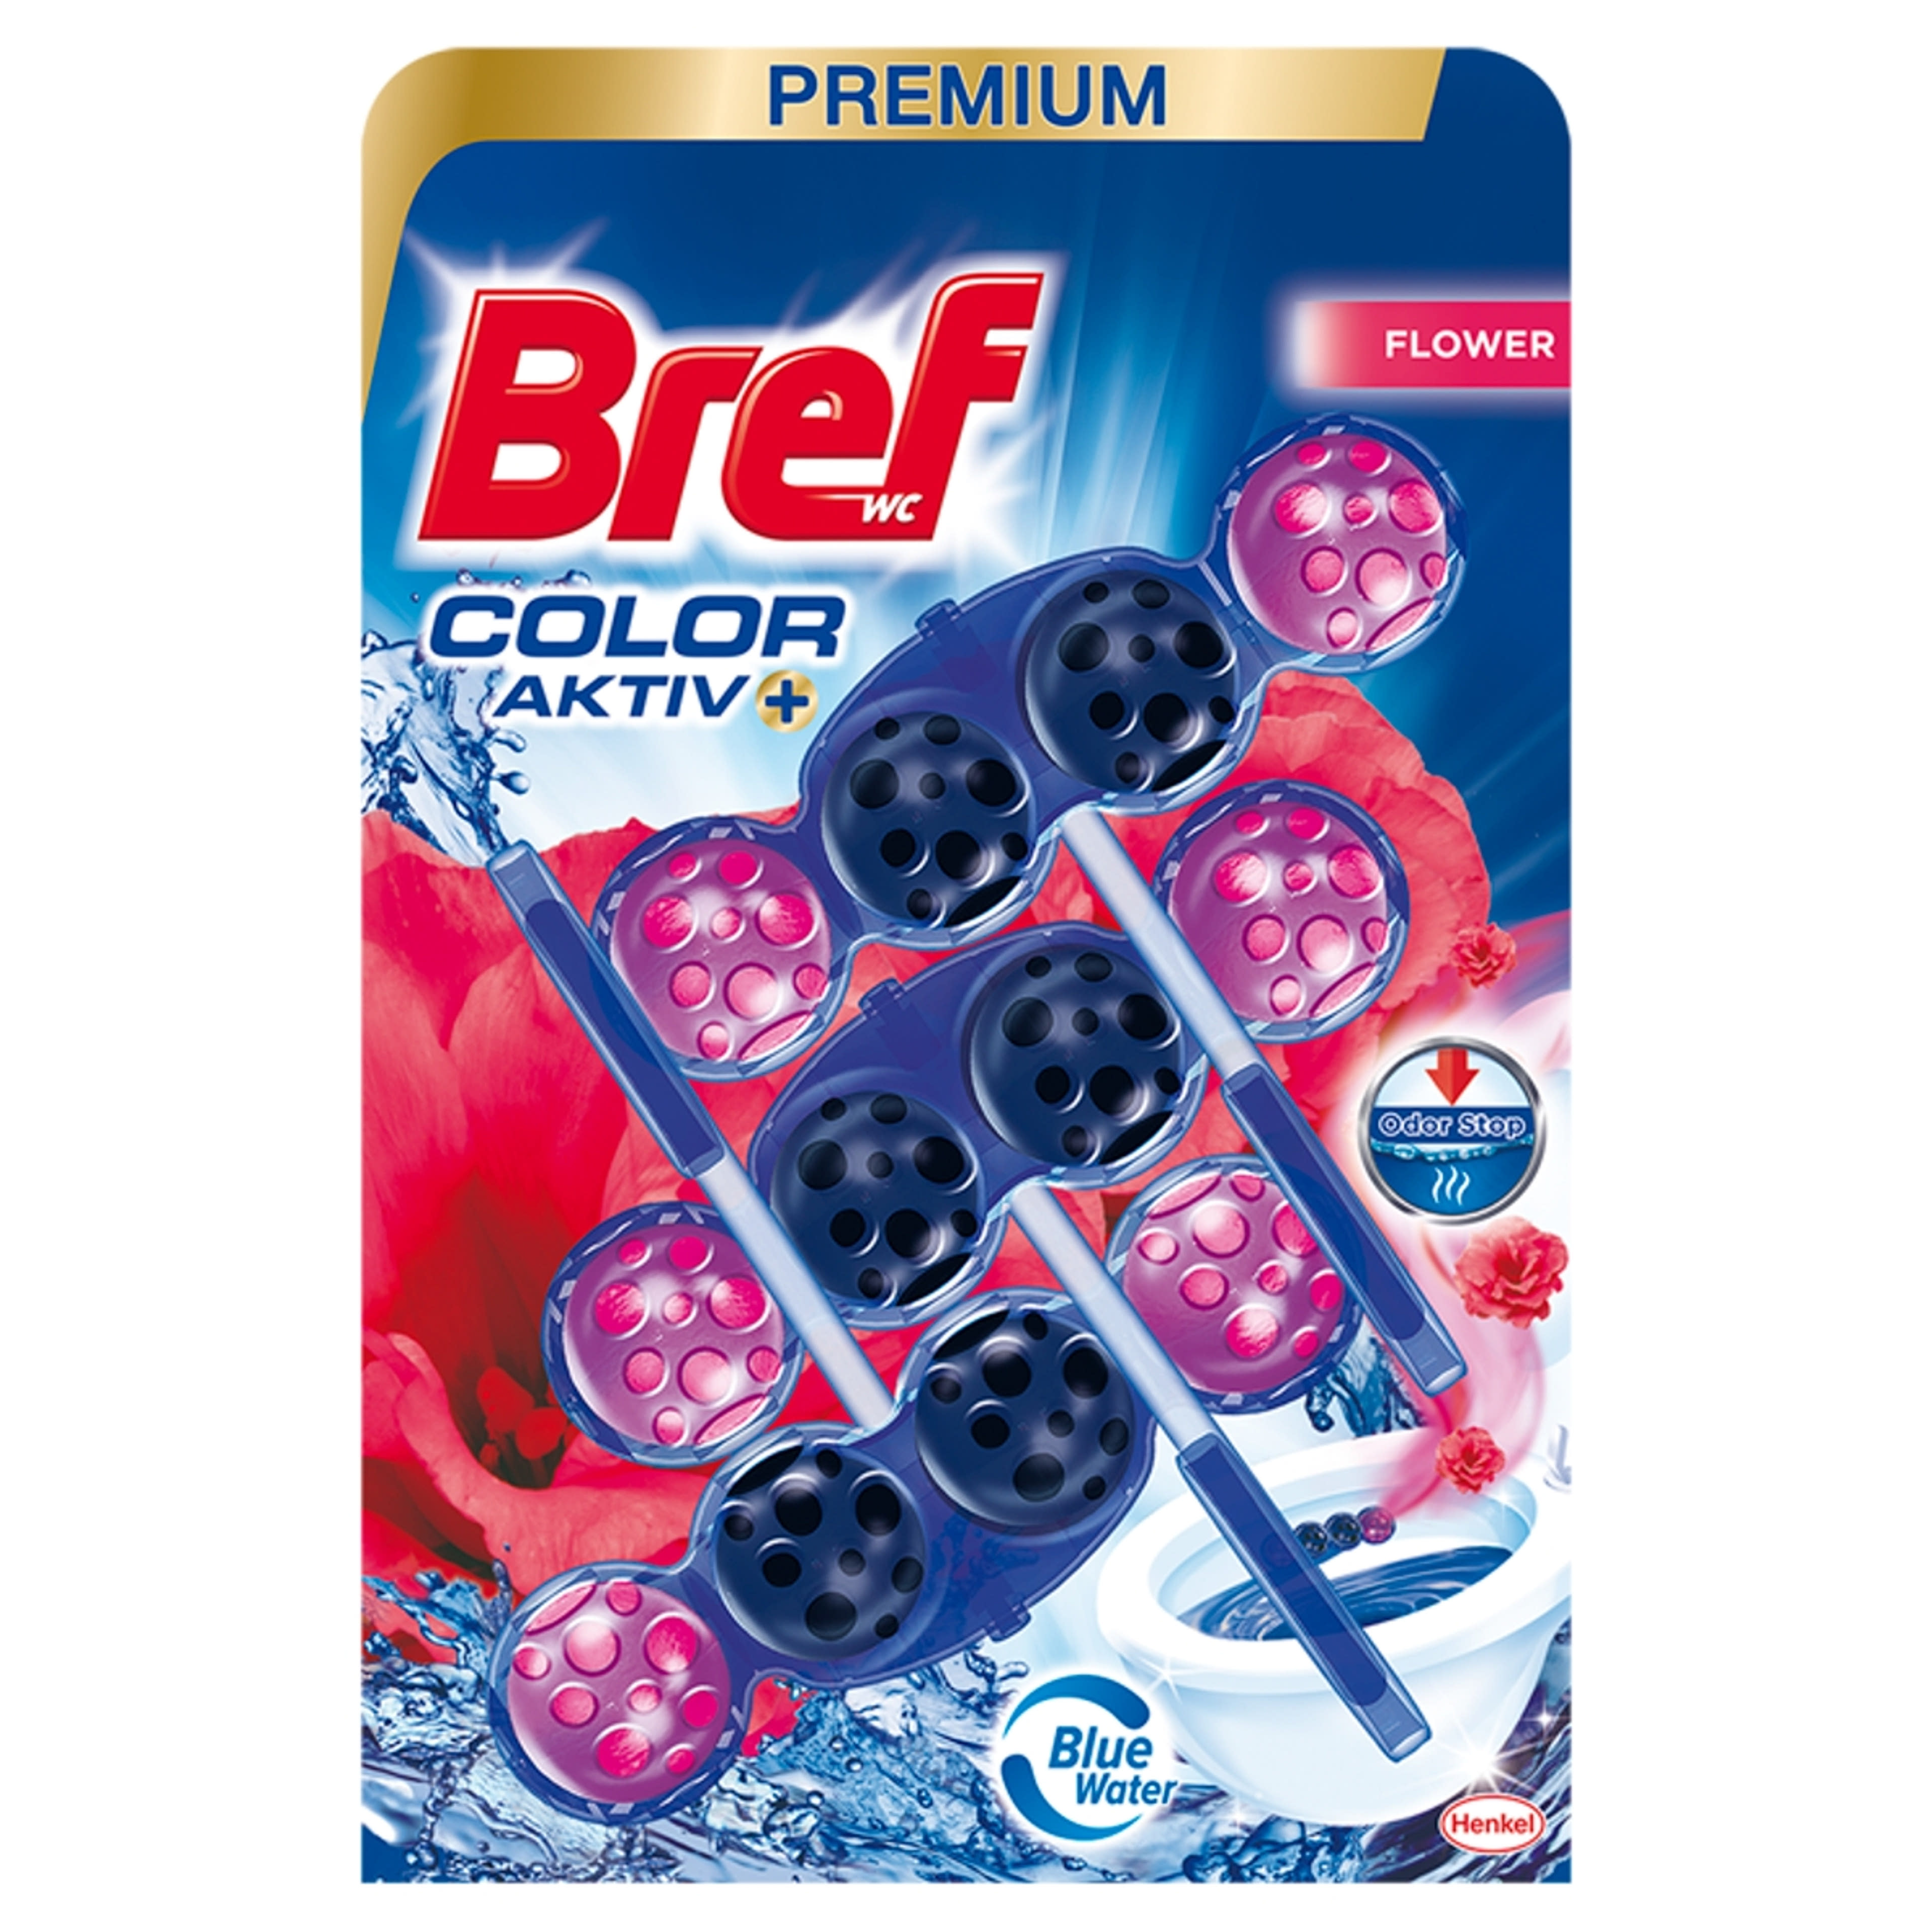 BREF COLOR AKTIV FLOWER WC illatosító (3x50 g) - 150 g